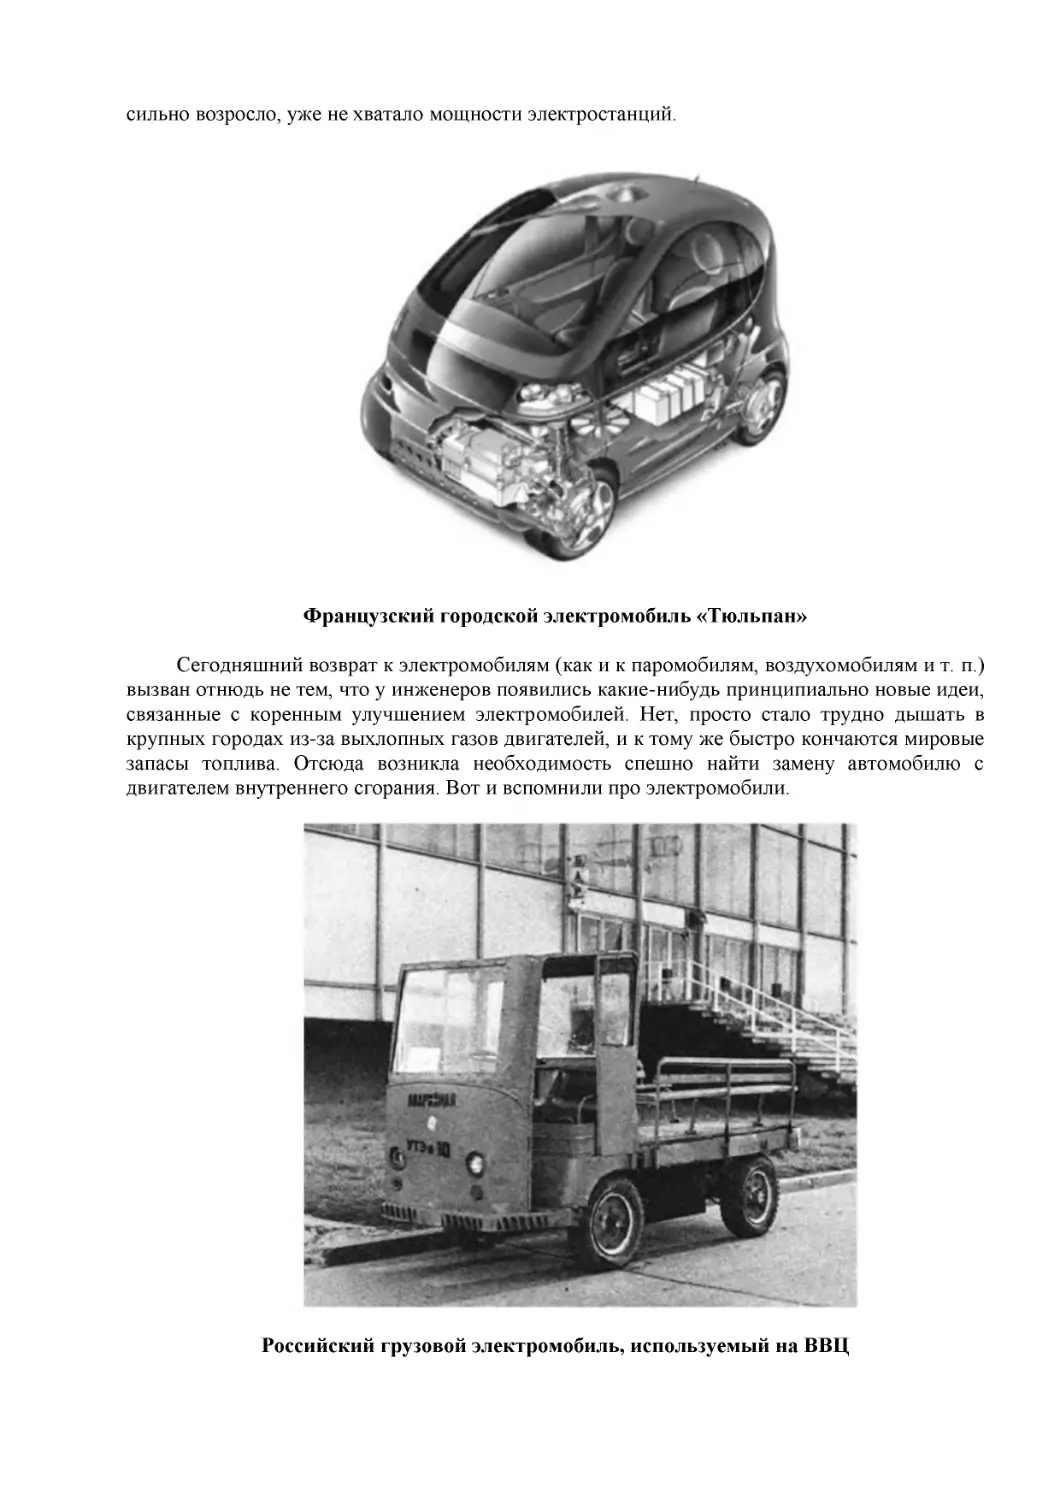 Французский городской электромобиль «Тюльпан»
Российский грузовой электромобиль, используемый на ВВЦ